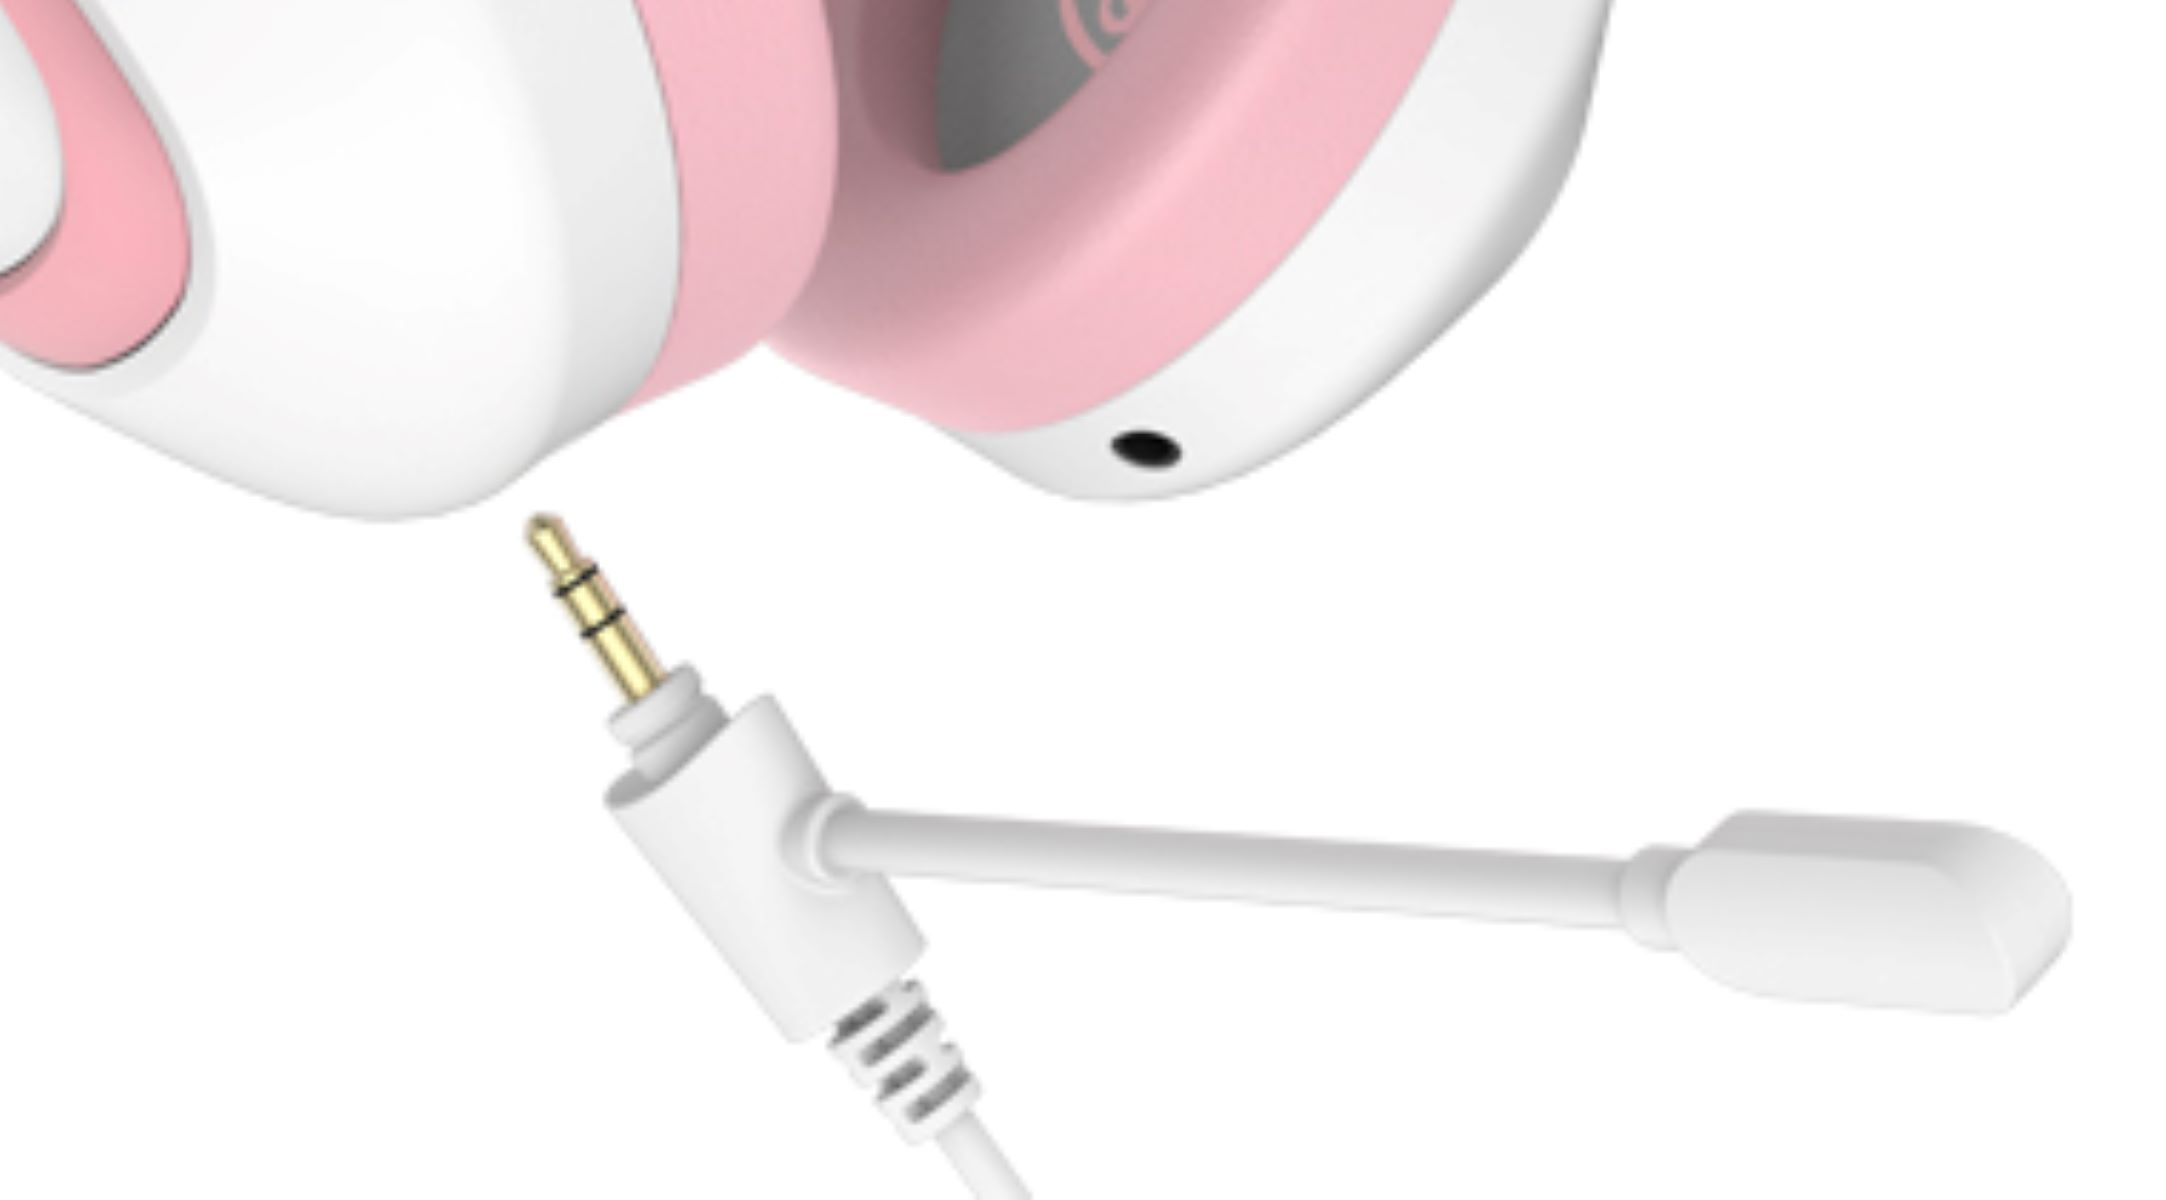 SADES Gaming Over-ear Headset weiß/pink SA-724, Shaman